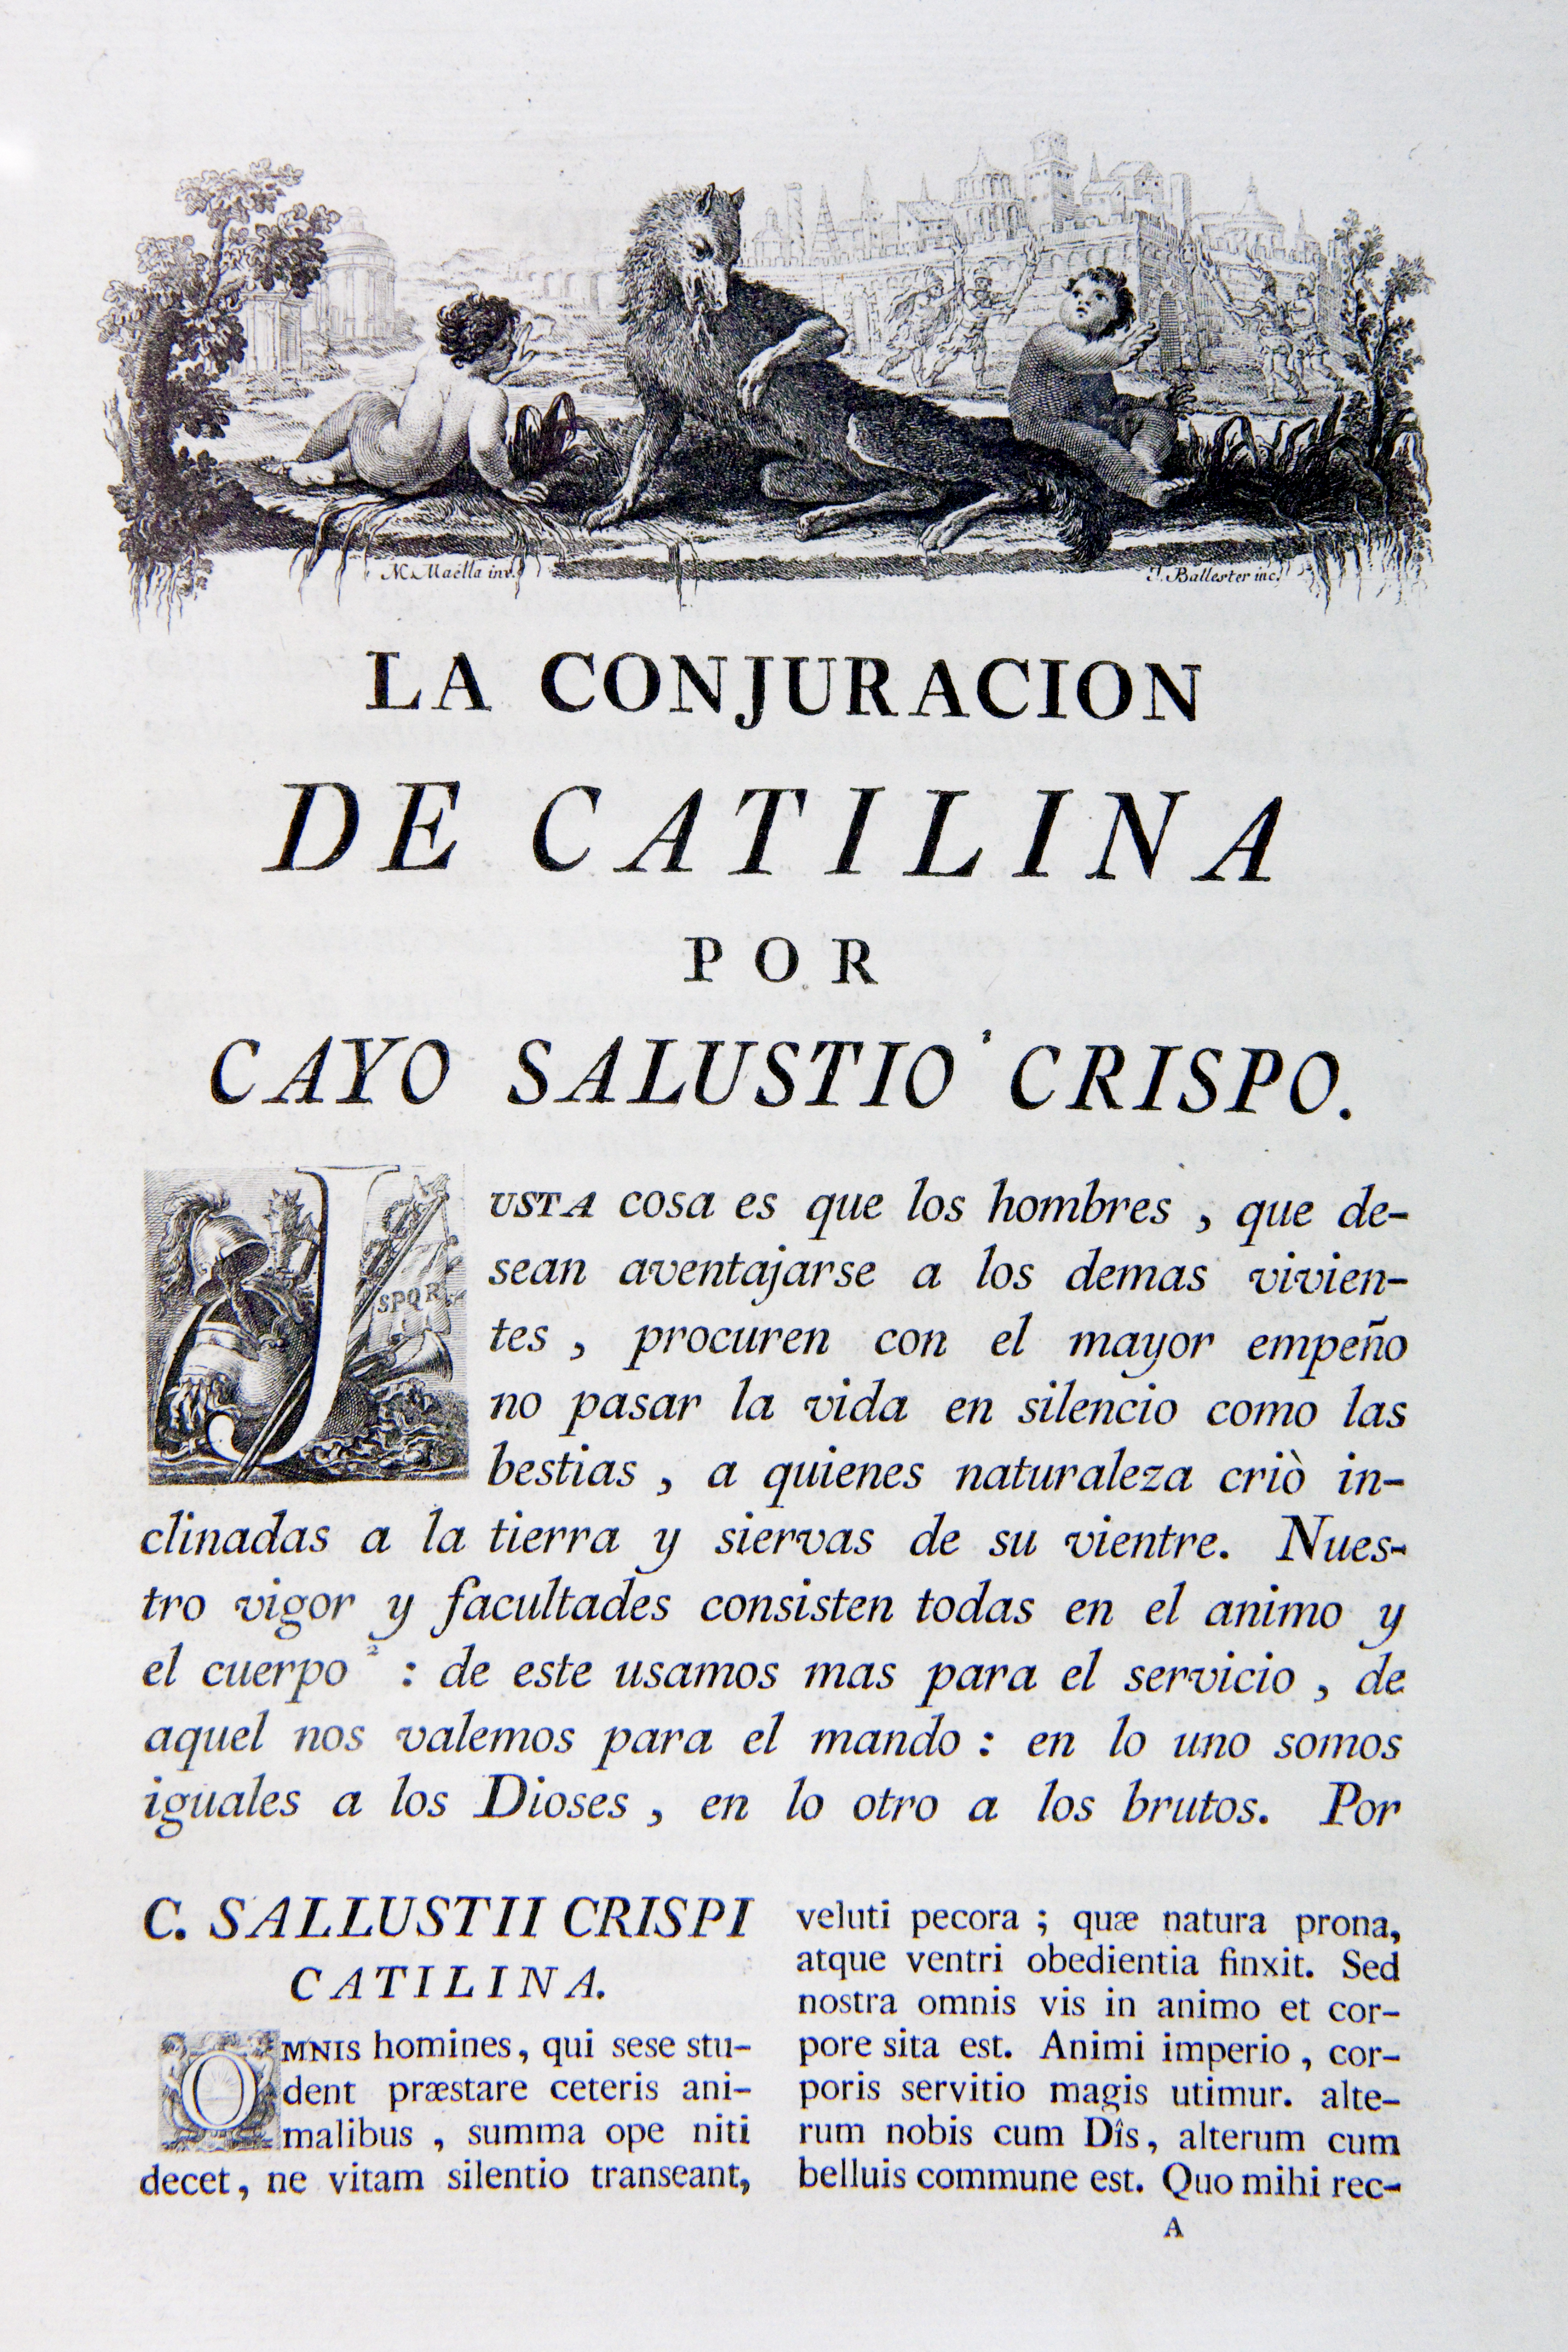 La conjuracion de Catilina y la guerra de Jugurta